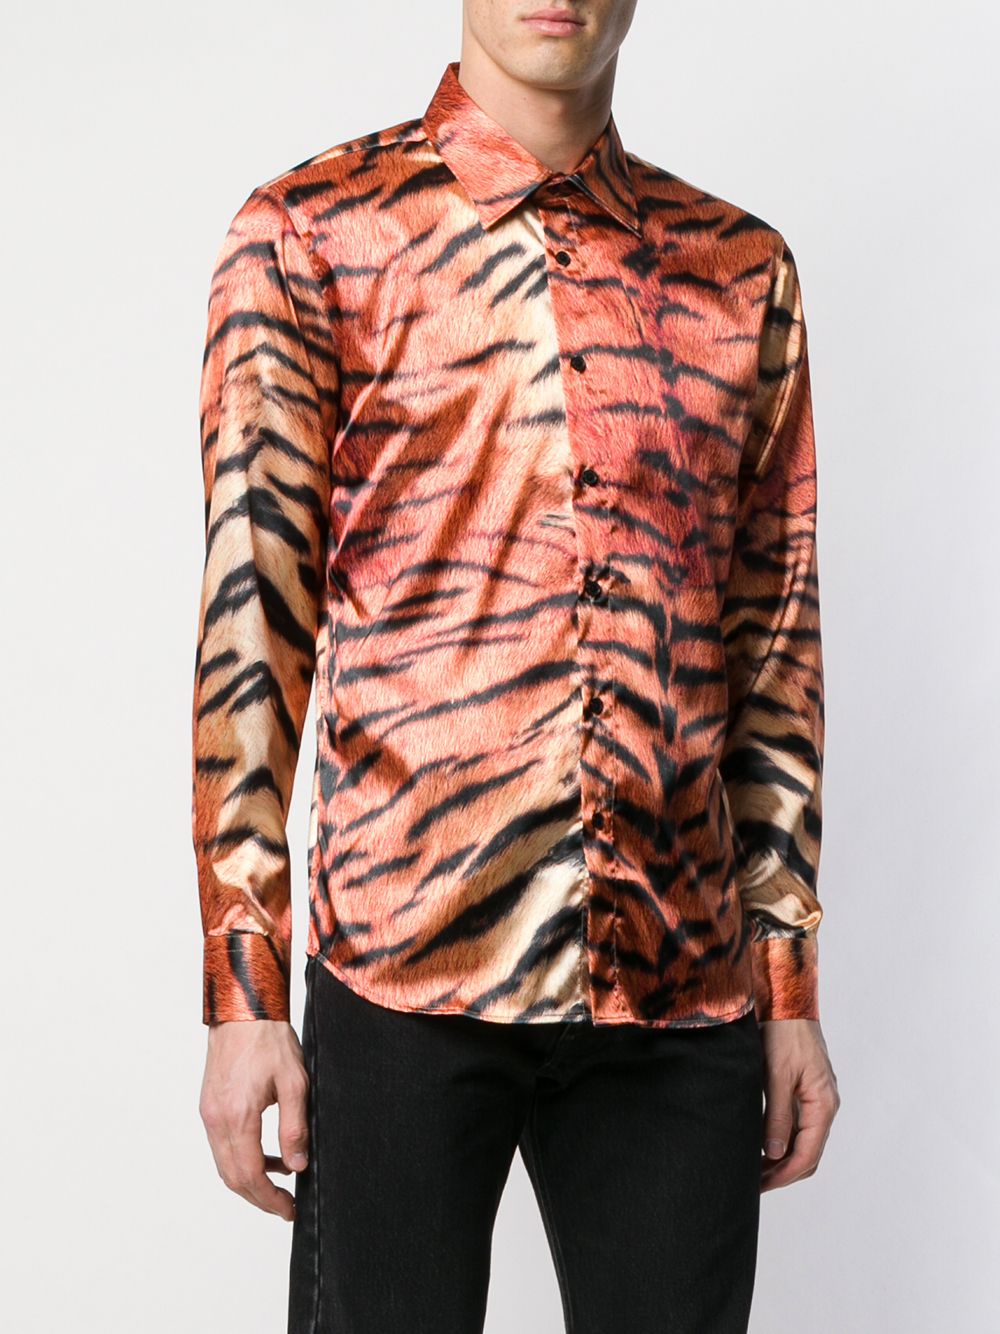 фото Sss World Corp футболка с принтом тигра